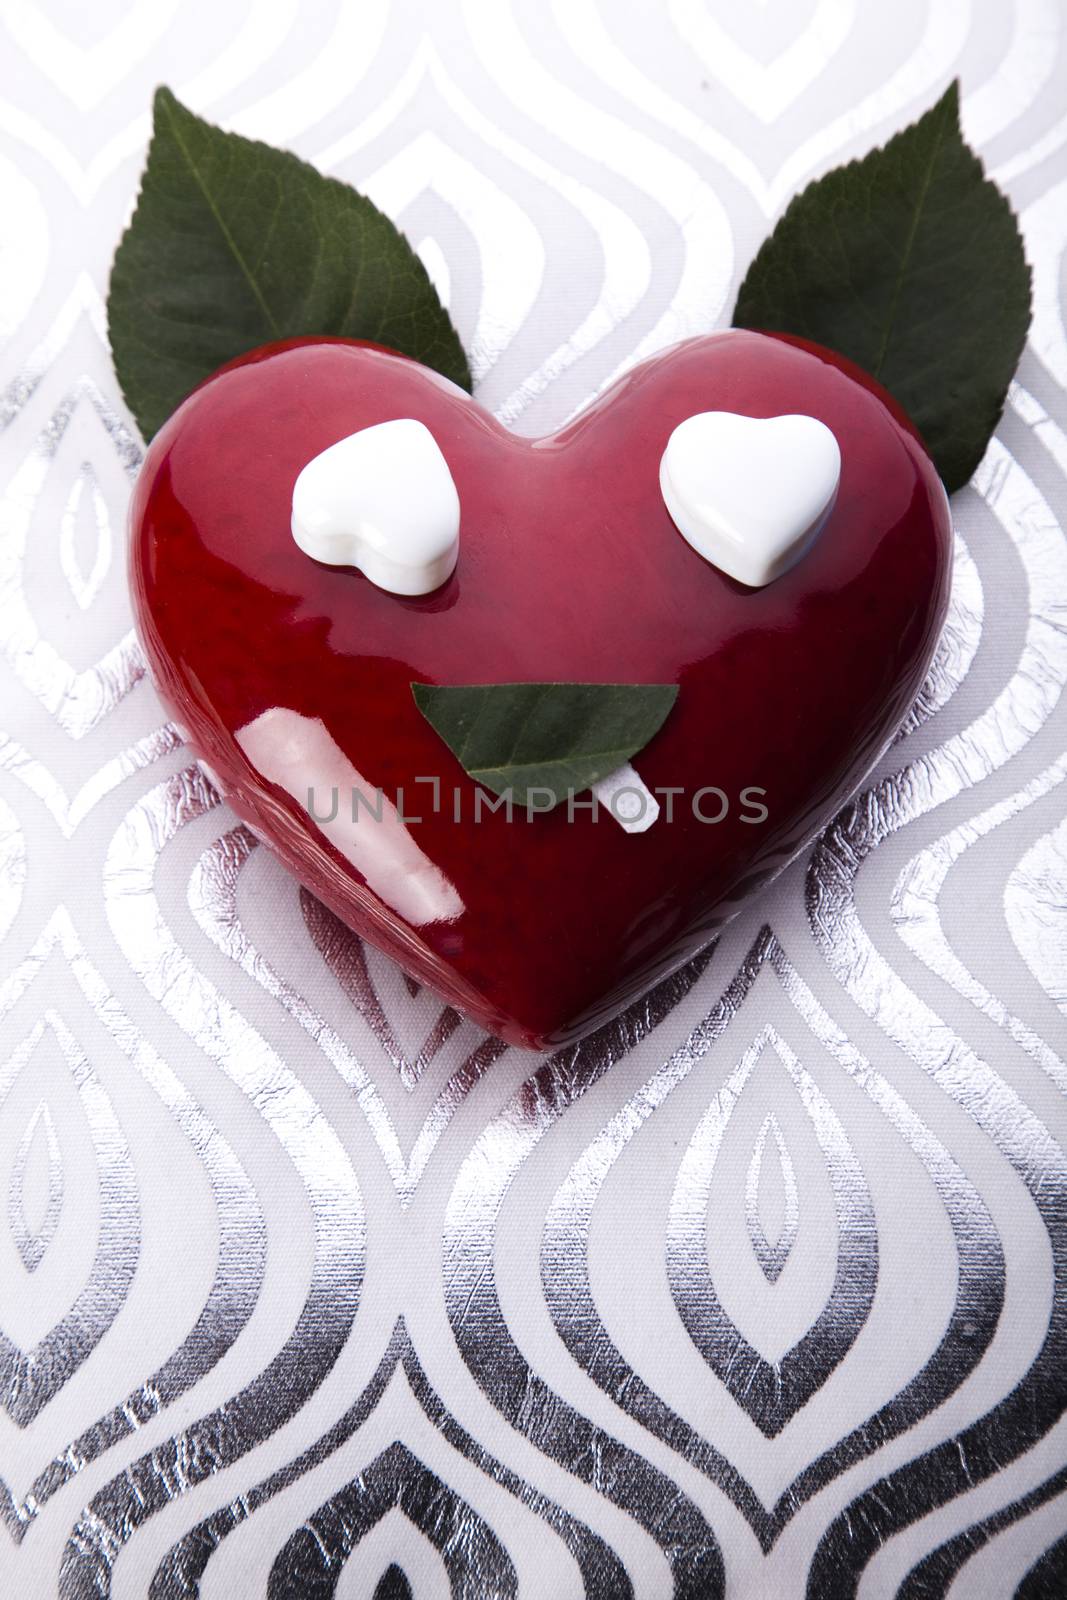 Red heart, romantic bright tone theme